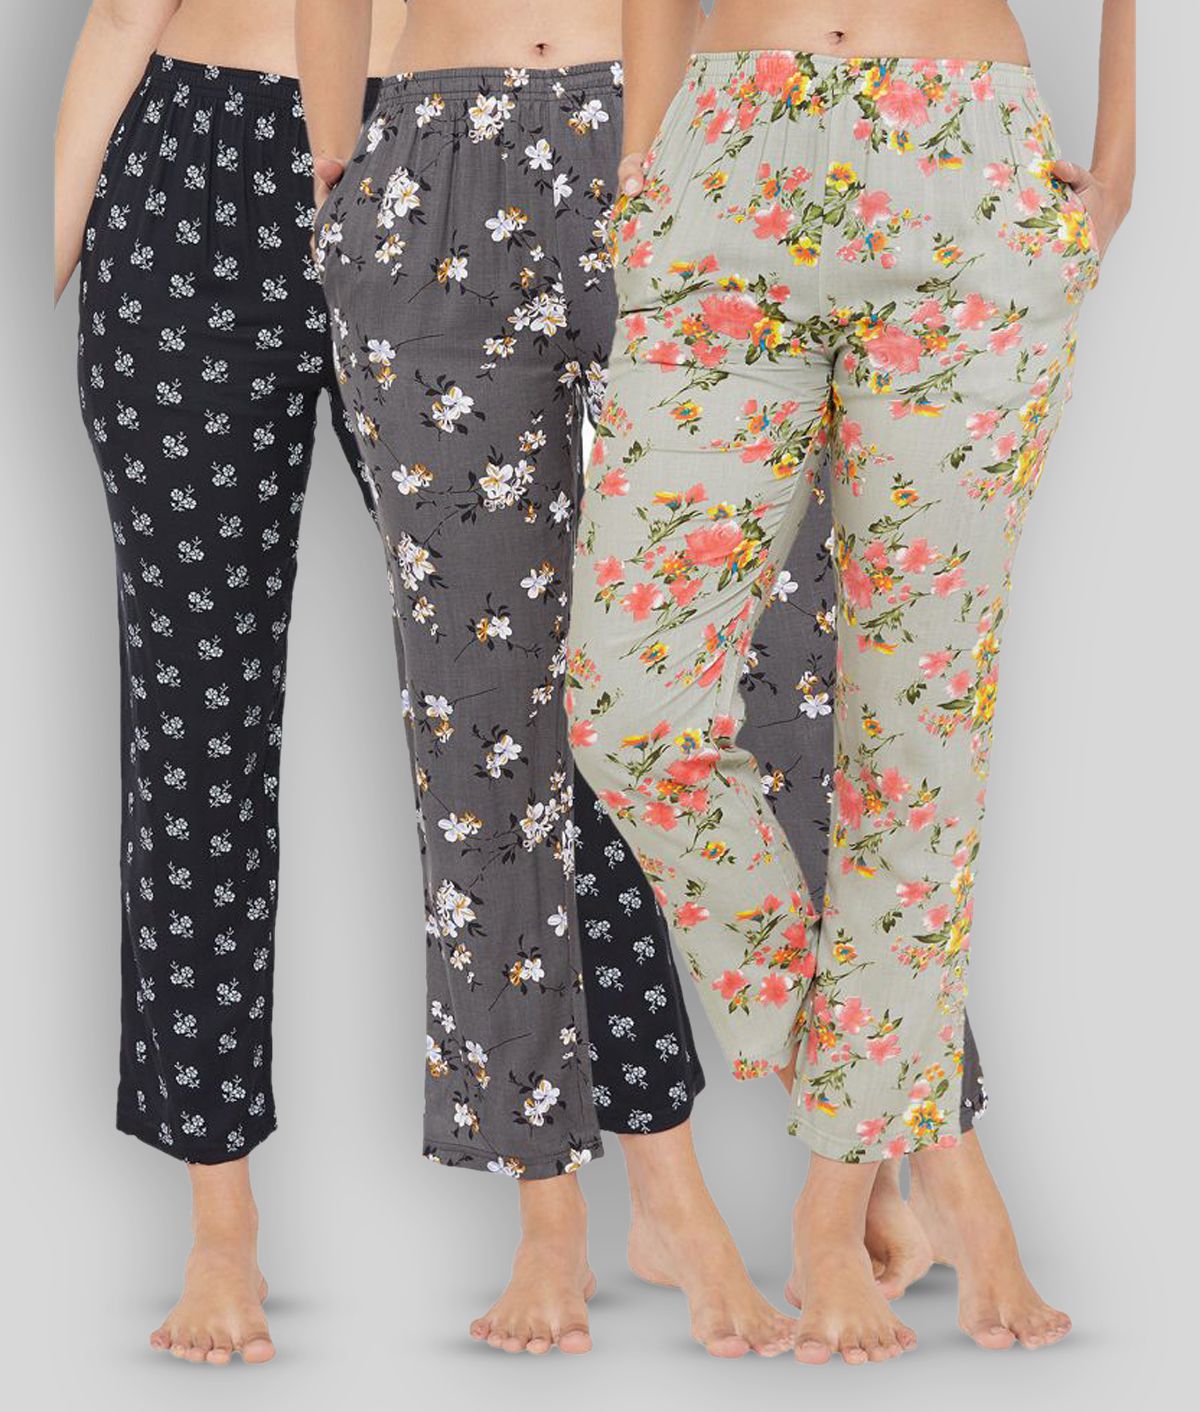     			Clovia Rayon Pajamas - Multi Color Pack of 3